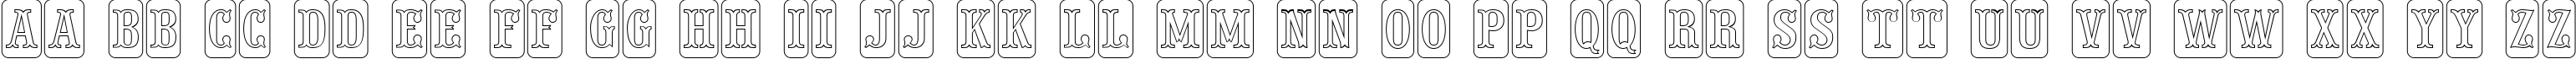 Пример написания английского алфавита шрифтом a_PresentumNrCmDcOtl